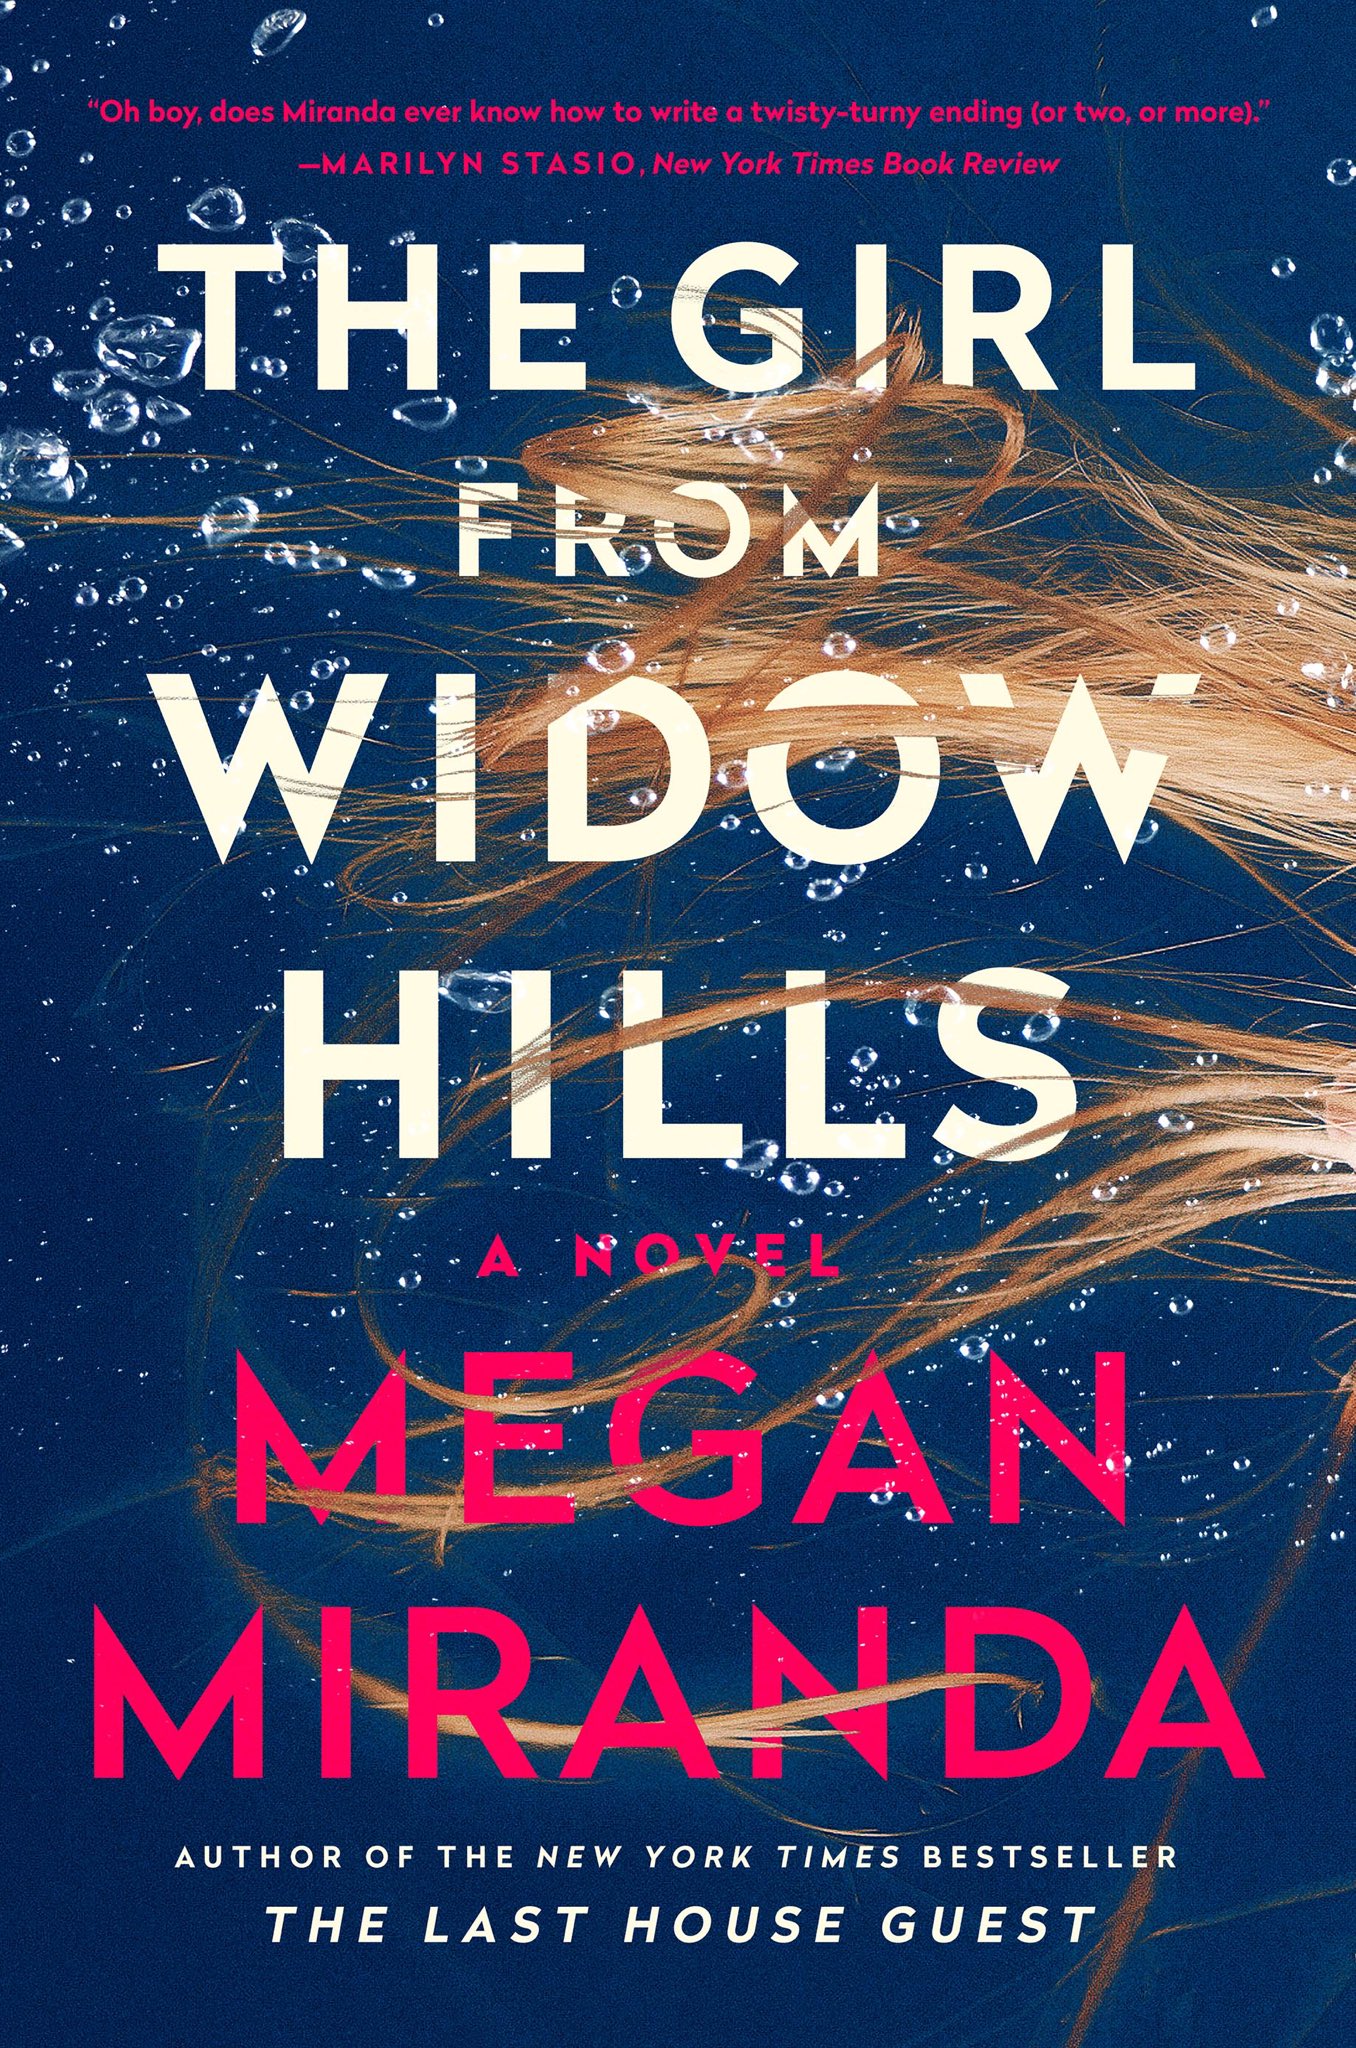 The girl from Widow Hills : a novel